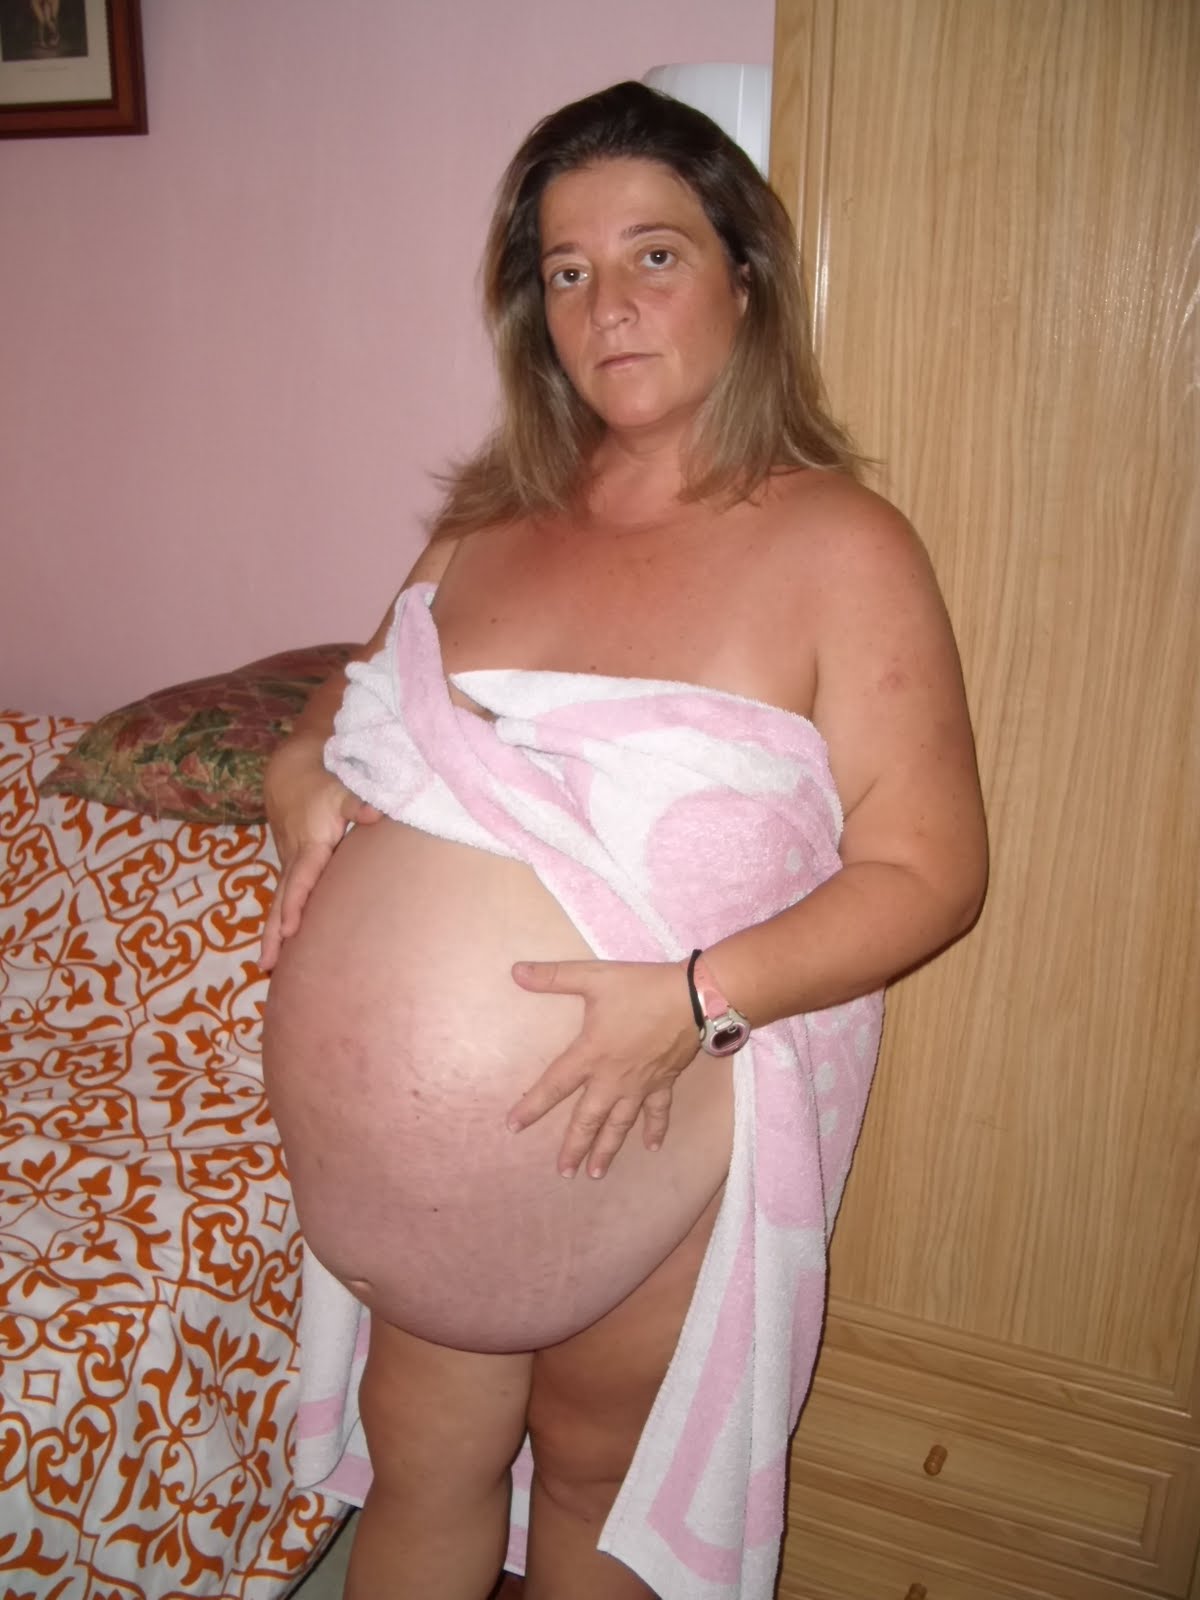 Embarazo De 8 Semanas De Gestacion Imagenes